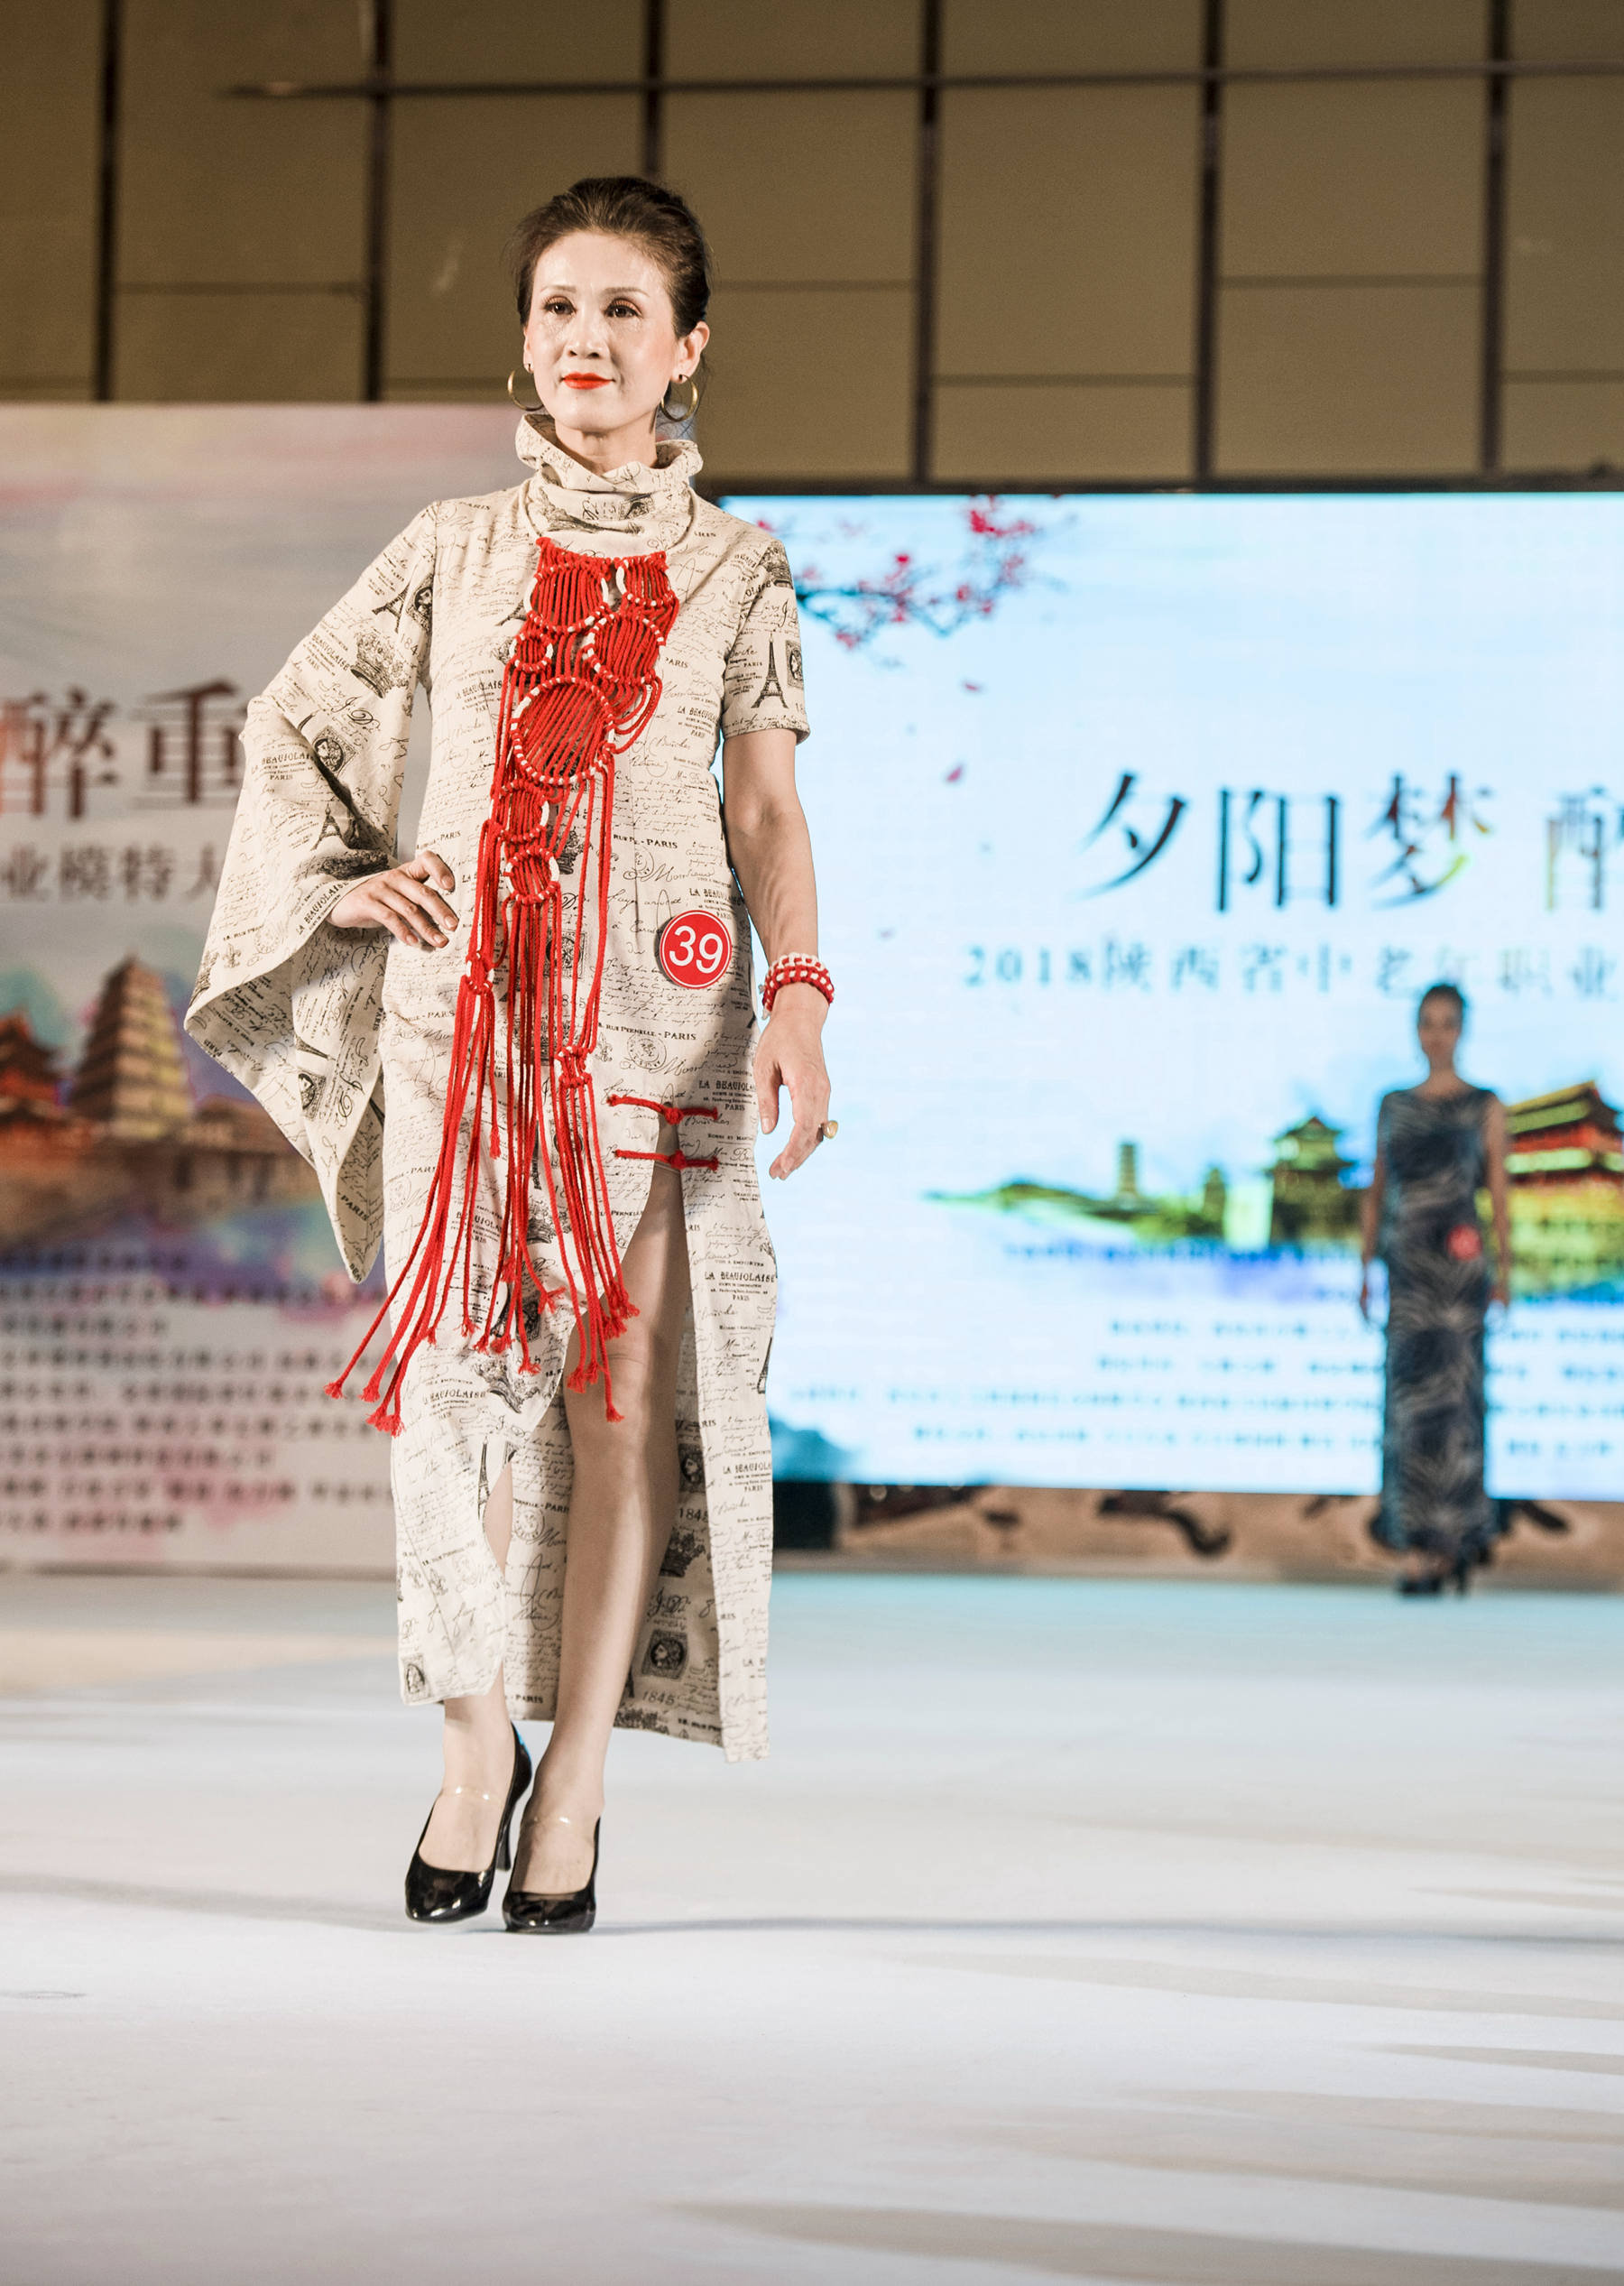 夕阳梦醉重阳2018陕西省中老年职业模特大赛总决赛在西安举行